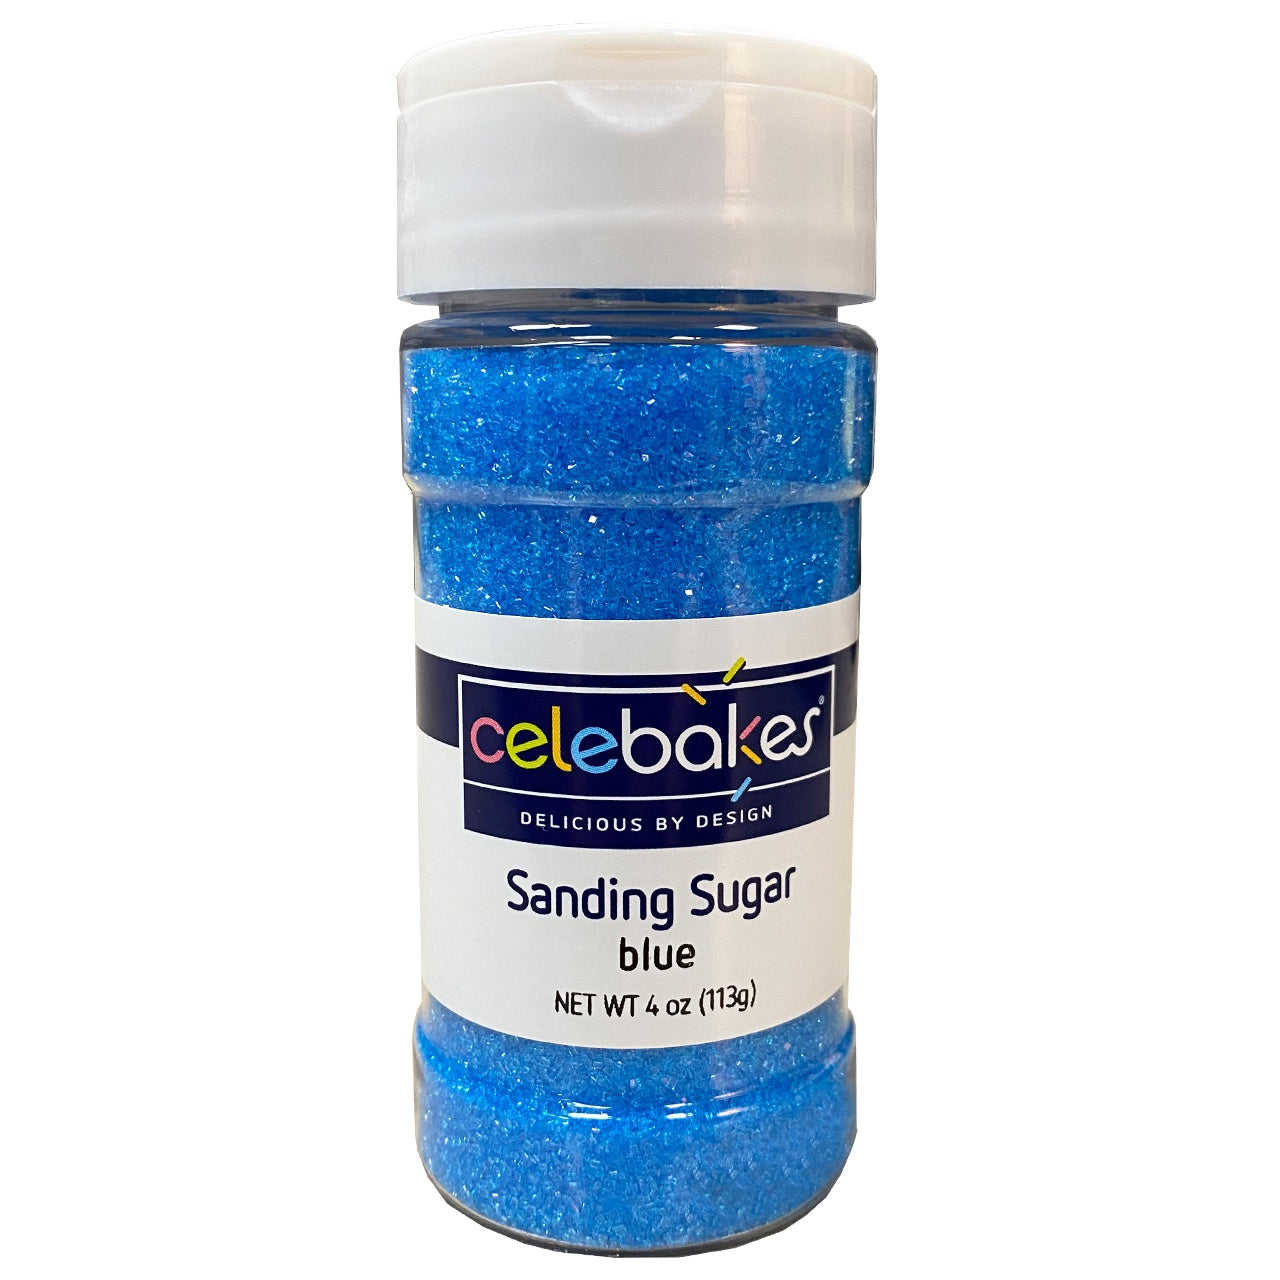 Celebakes Blue Sanding Sugar